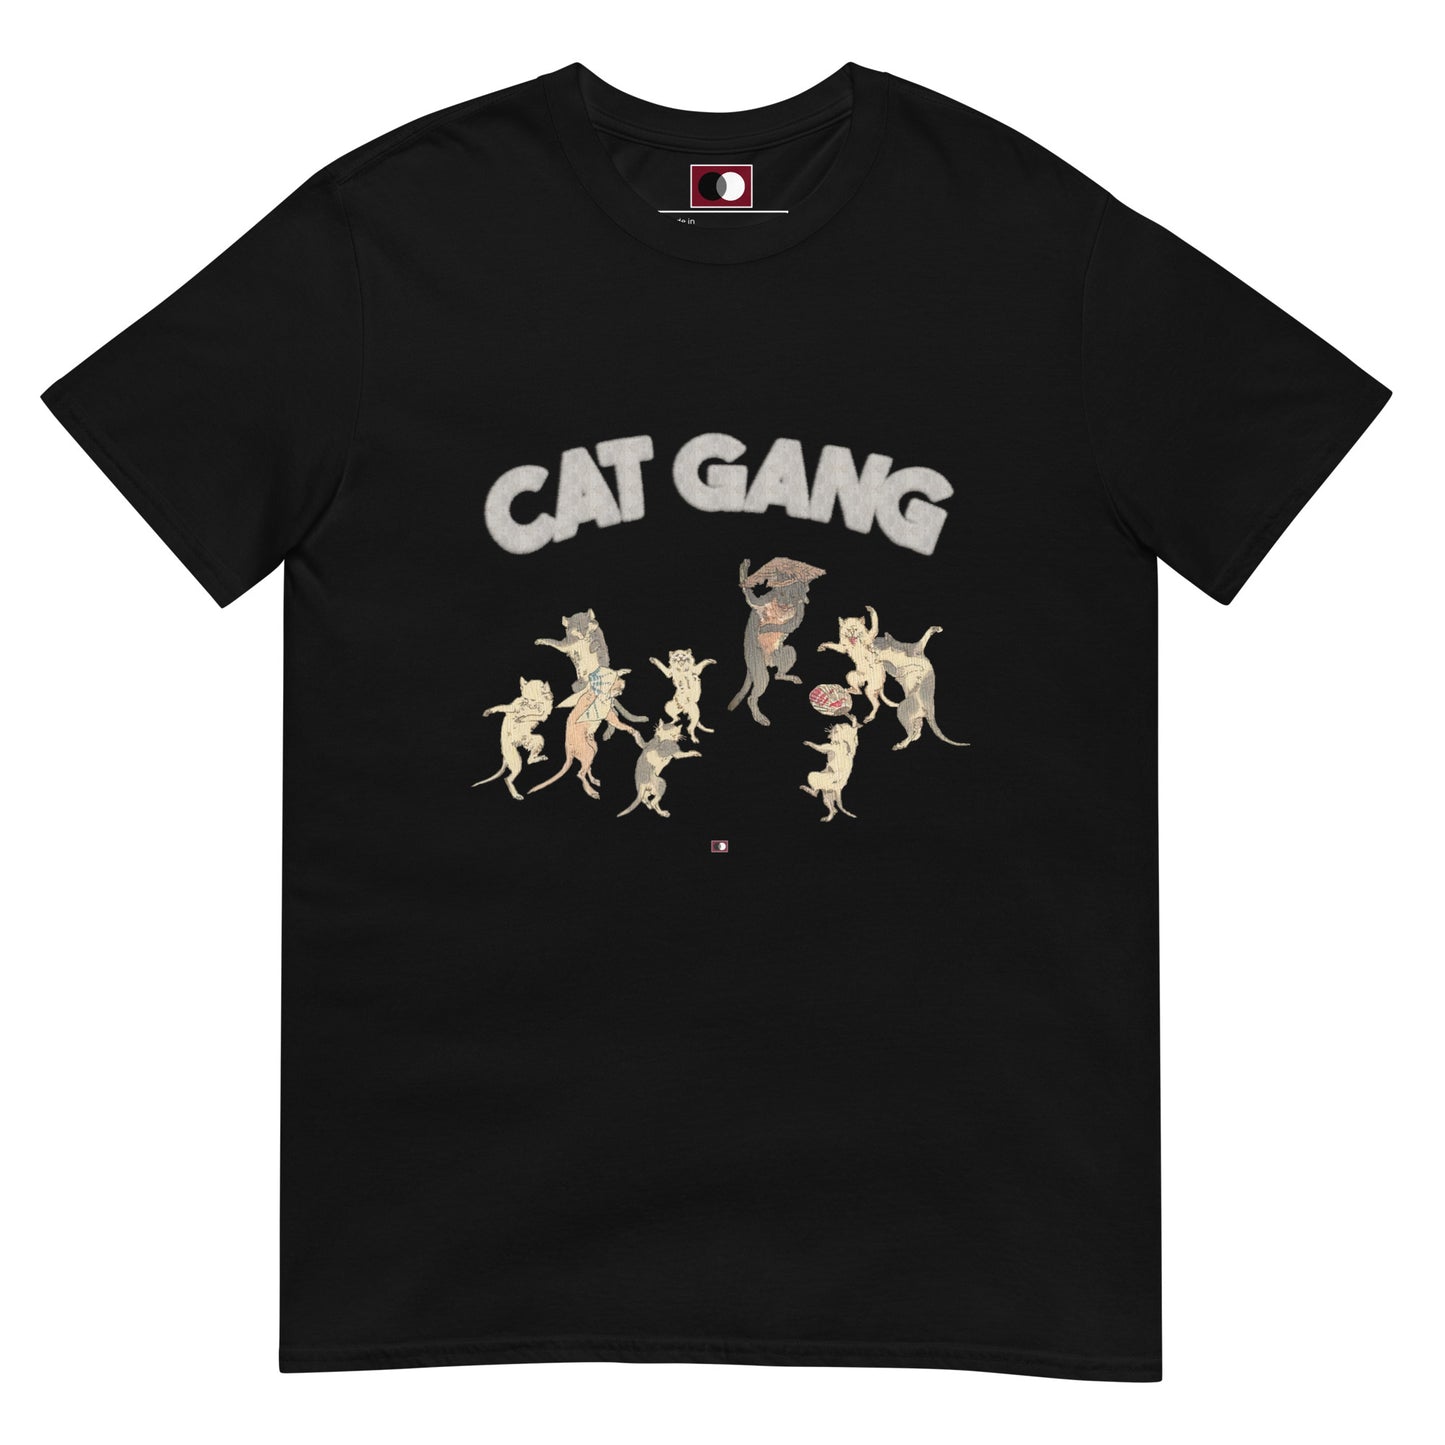 CAT GANG T-SHIRT